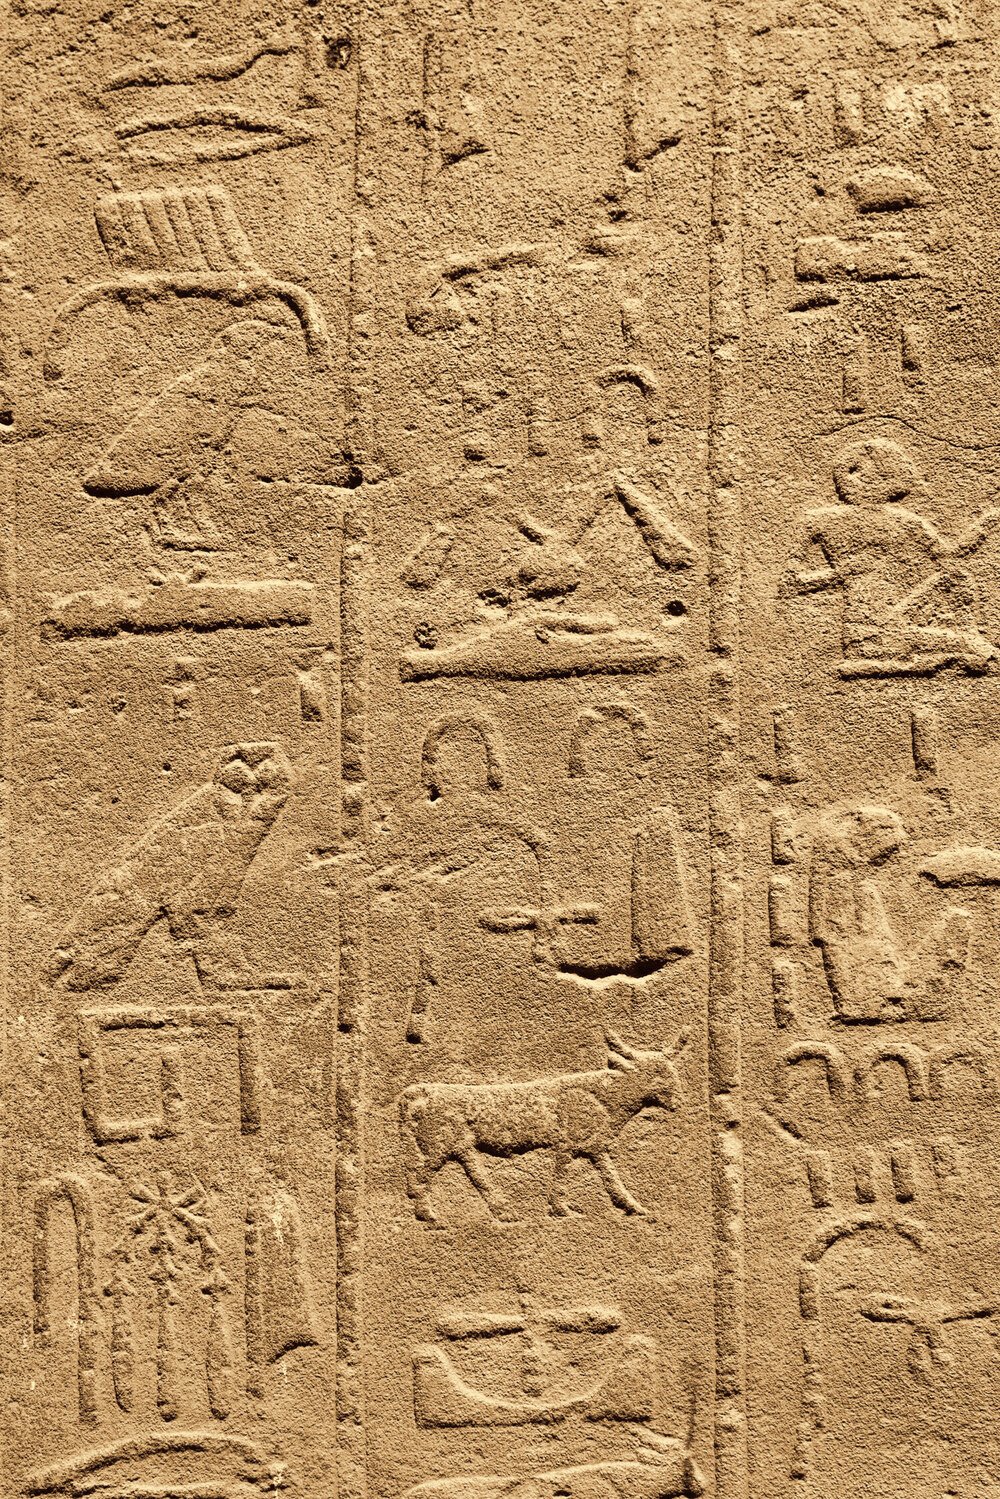 Hieroglyphs - Reizen naar Egypte